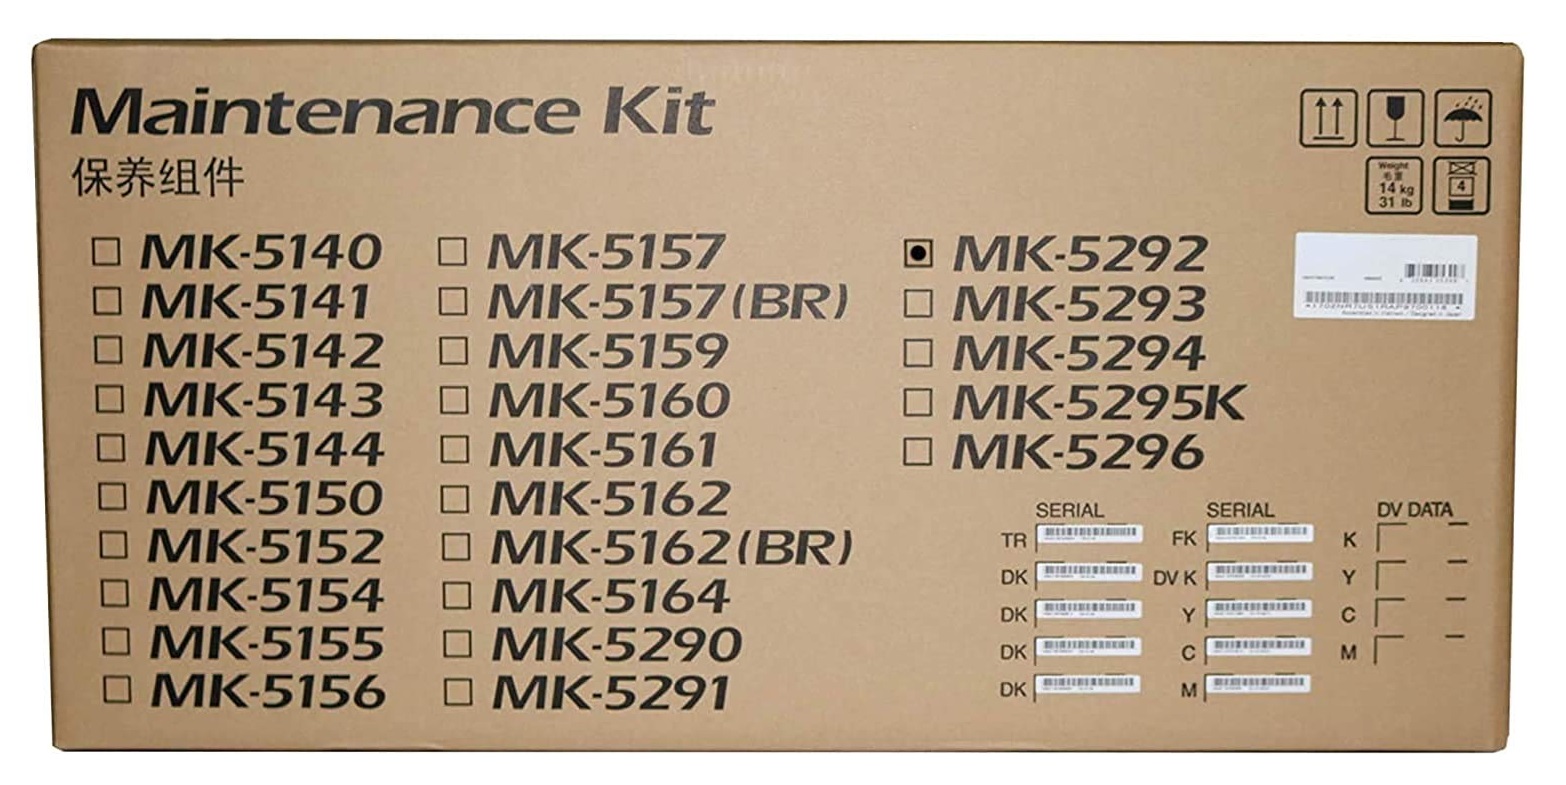 Kit de Mantenimiento para Kyocera FS-P7240cdn | 2404 - Kit de Mantenimiento MK-5292 para Kyocera FS-P7240cdn. Incluye: Unidad de Cilindro, Unidad de Revelado, Unidad Fusora, Unidad Transferencia. 1702TX7US1 1702TX7US0 